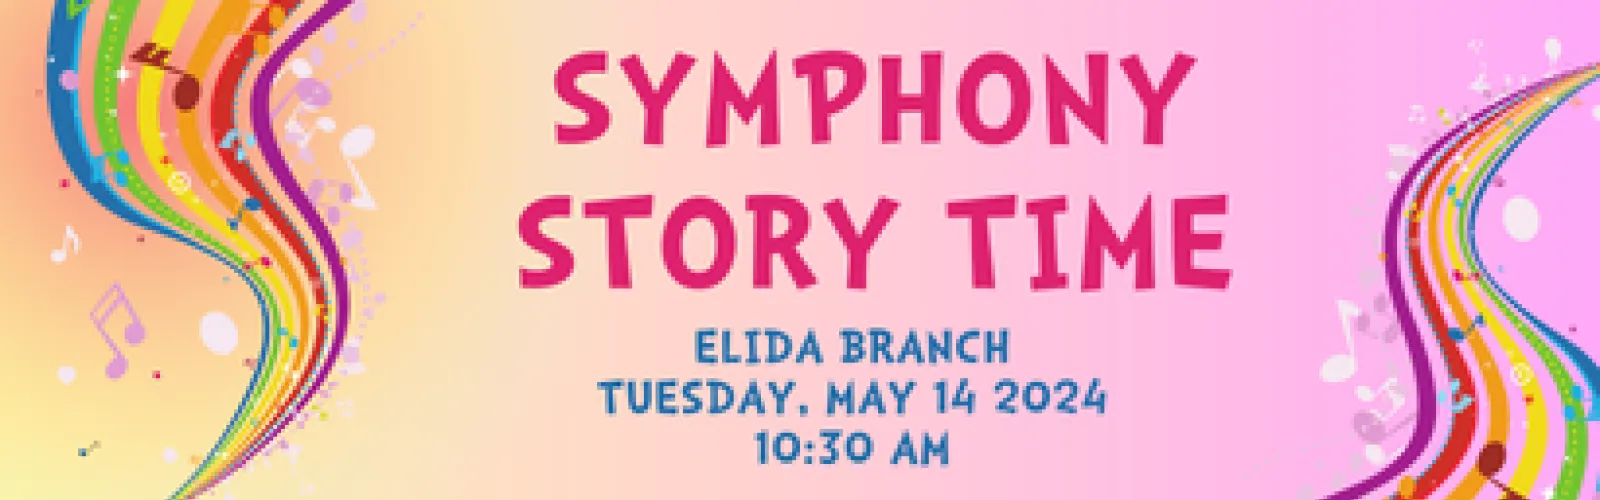 symphony story time